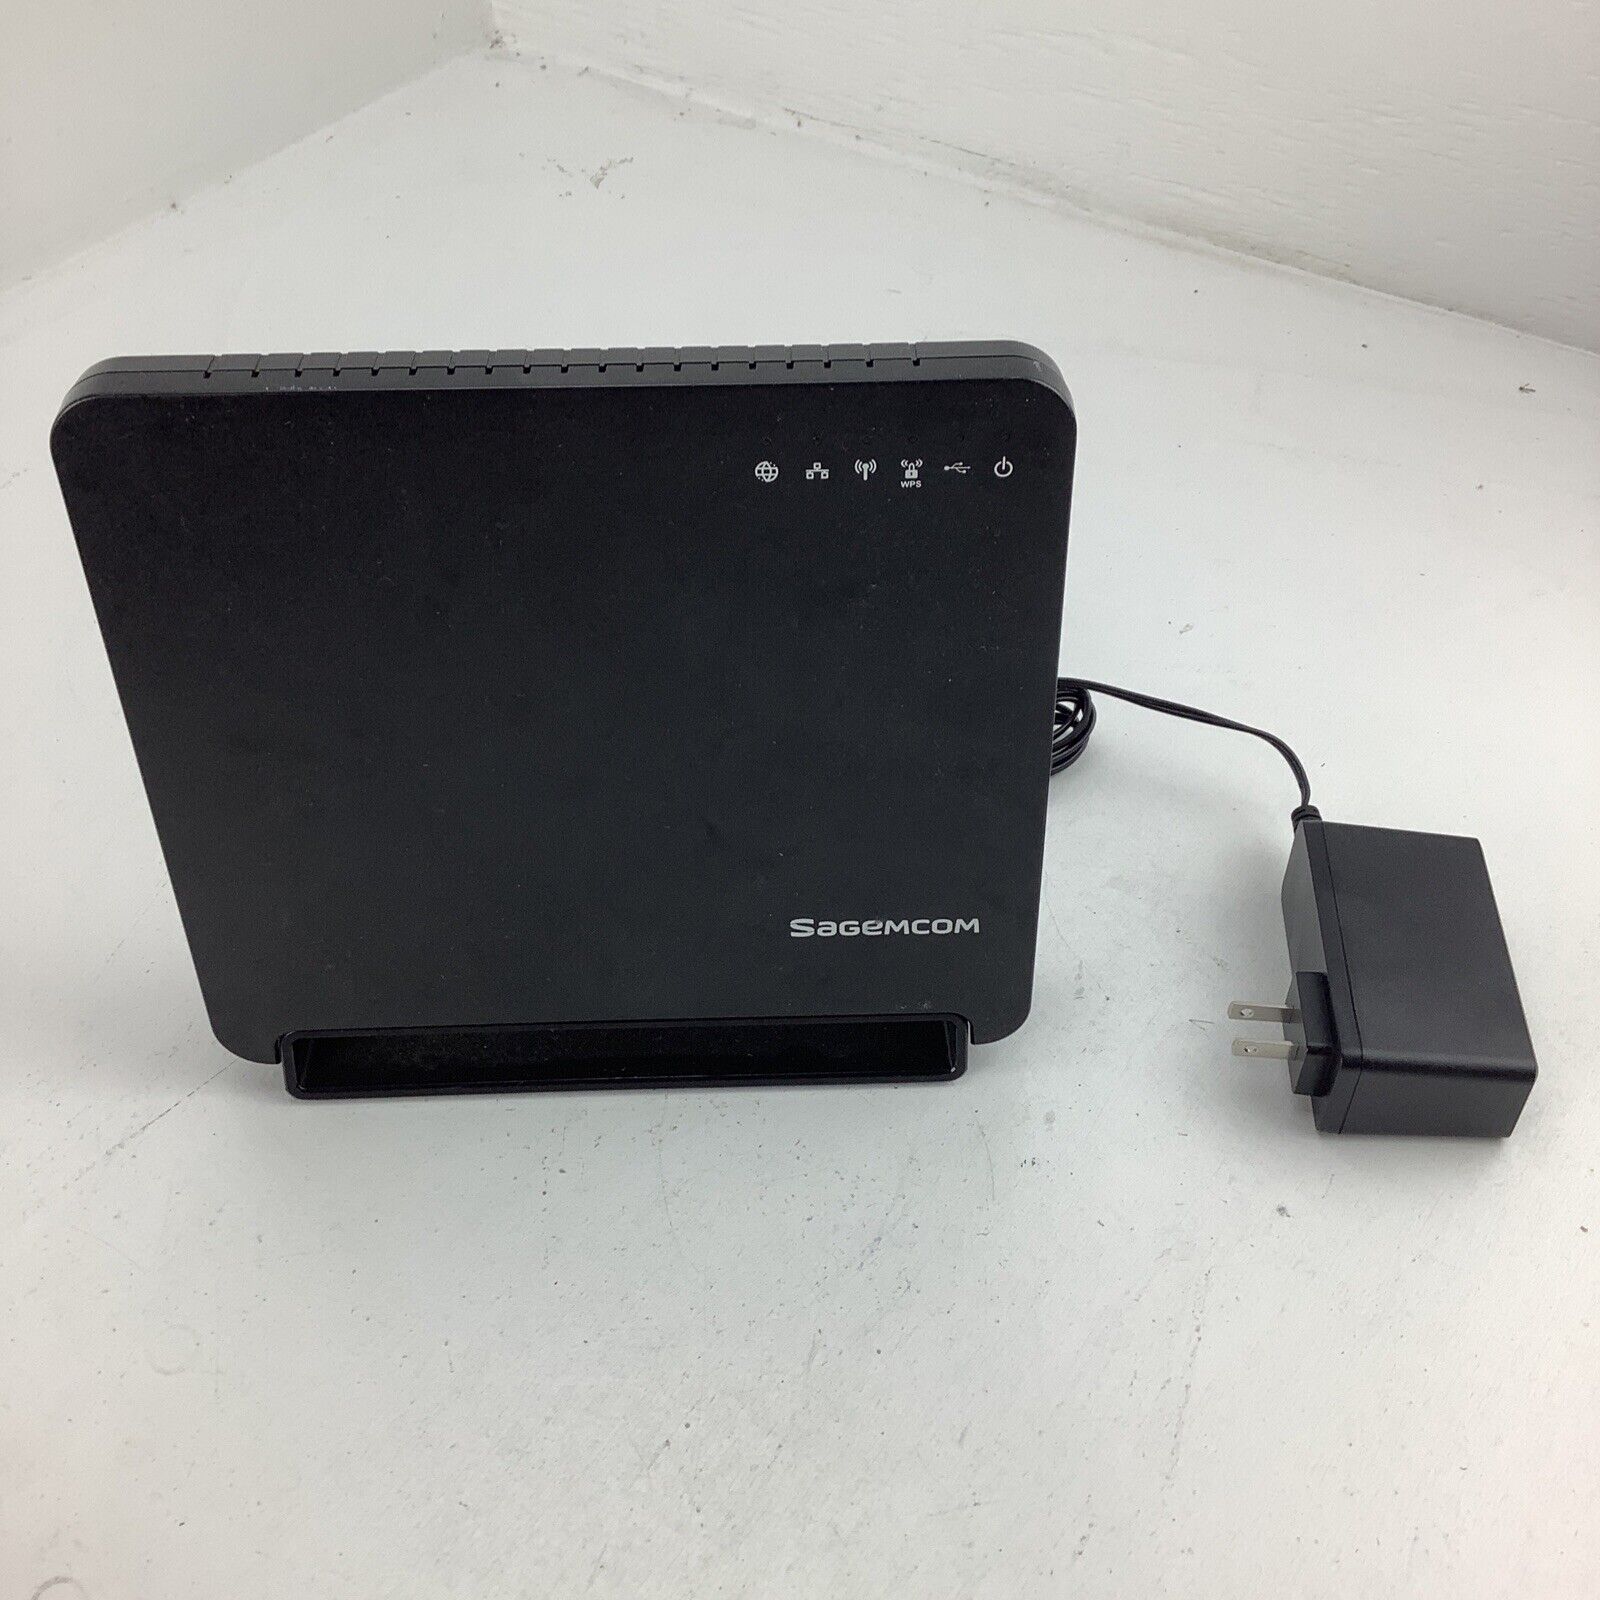 Sagemcom 5260 1000 Mbps Wireless Router - Black